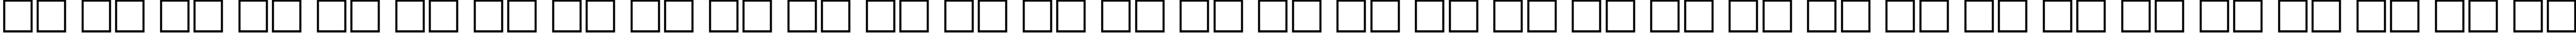 Пример написания русского алфавита шрифтом Herold